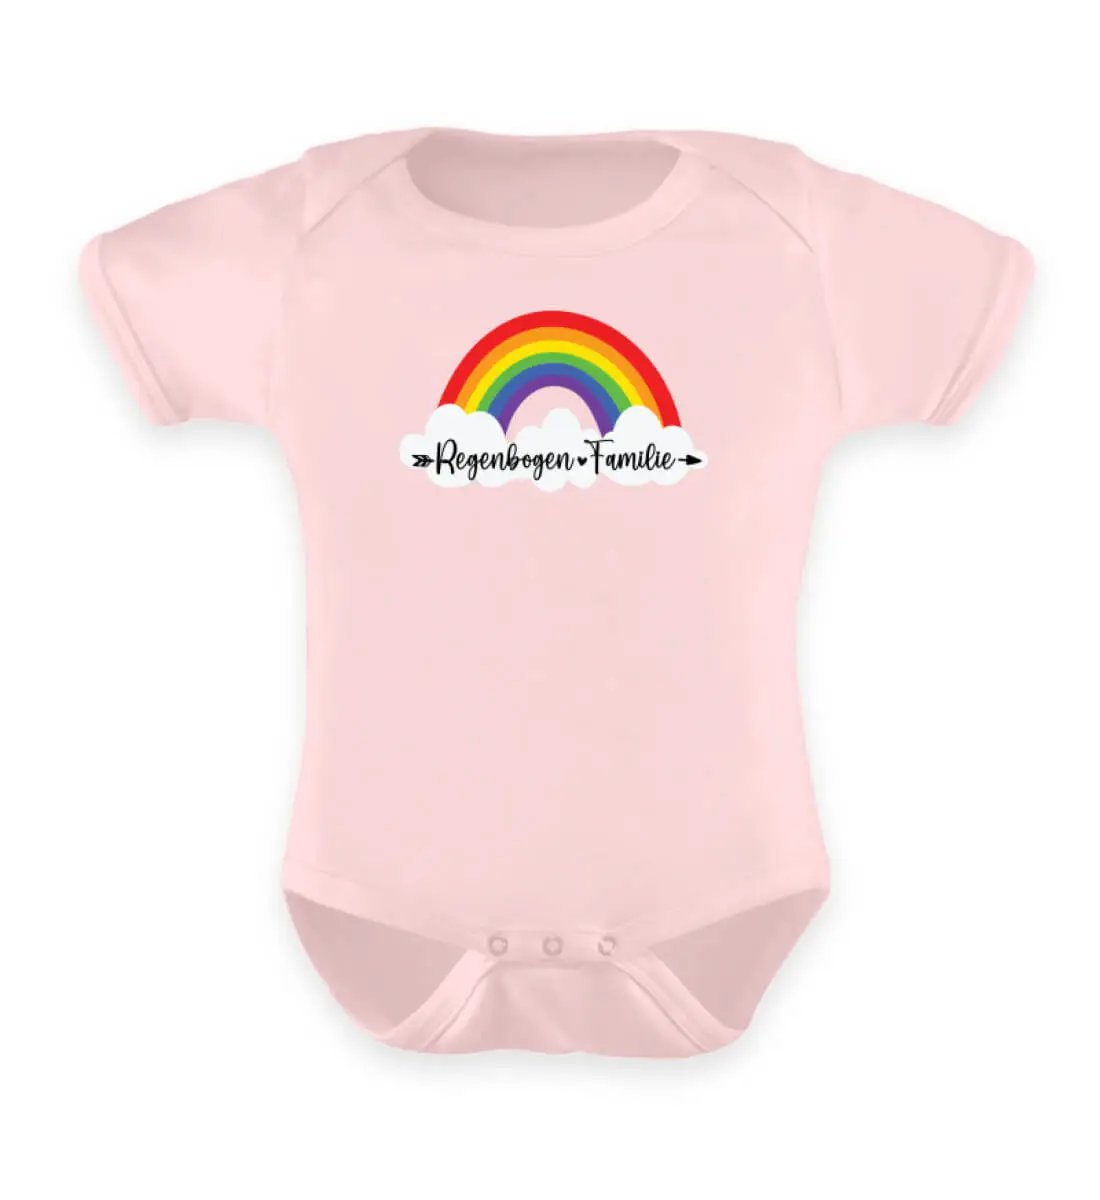 Dieses Bild zeigt einen rosa Baby Body mit einem Regenbogen-Motiv wo drauf steht Regenbogen-Familie